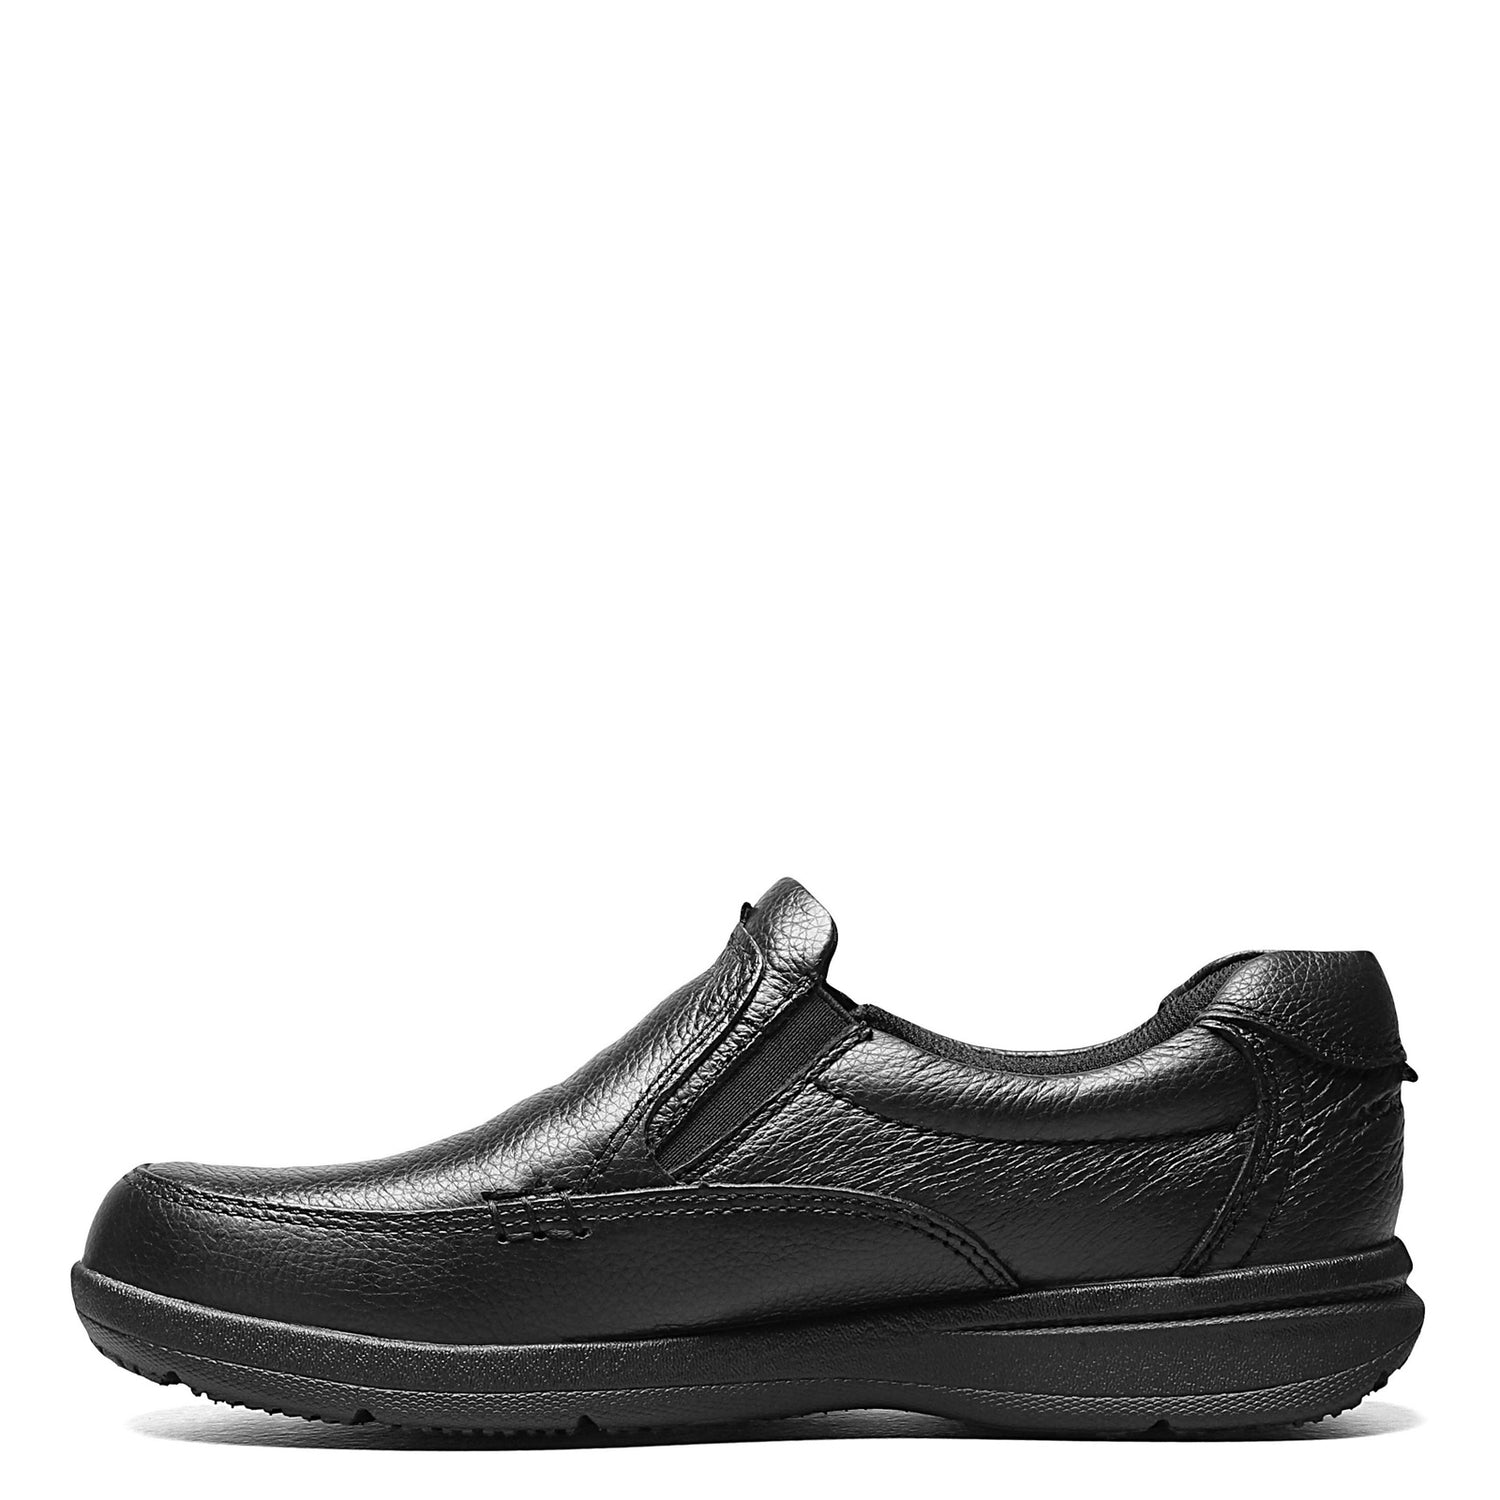 Peltz Shoes  Men's Nunn Bush Cam Moc Toe Slip On BLACK 84696-007